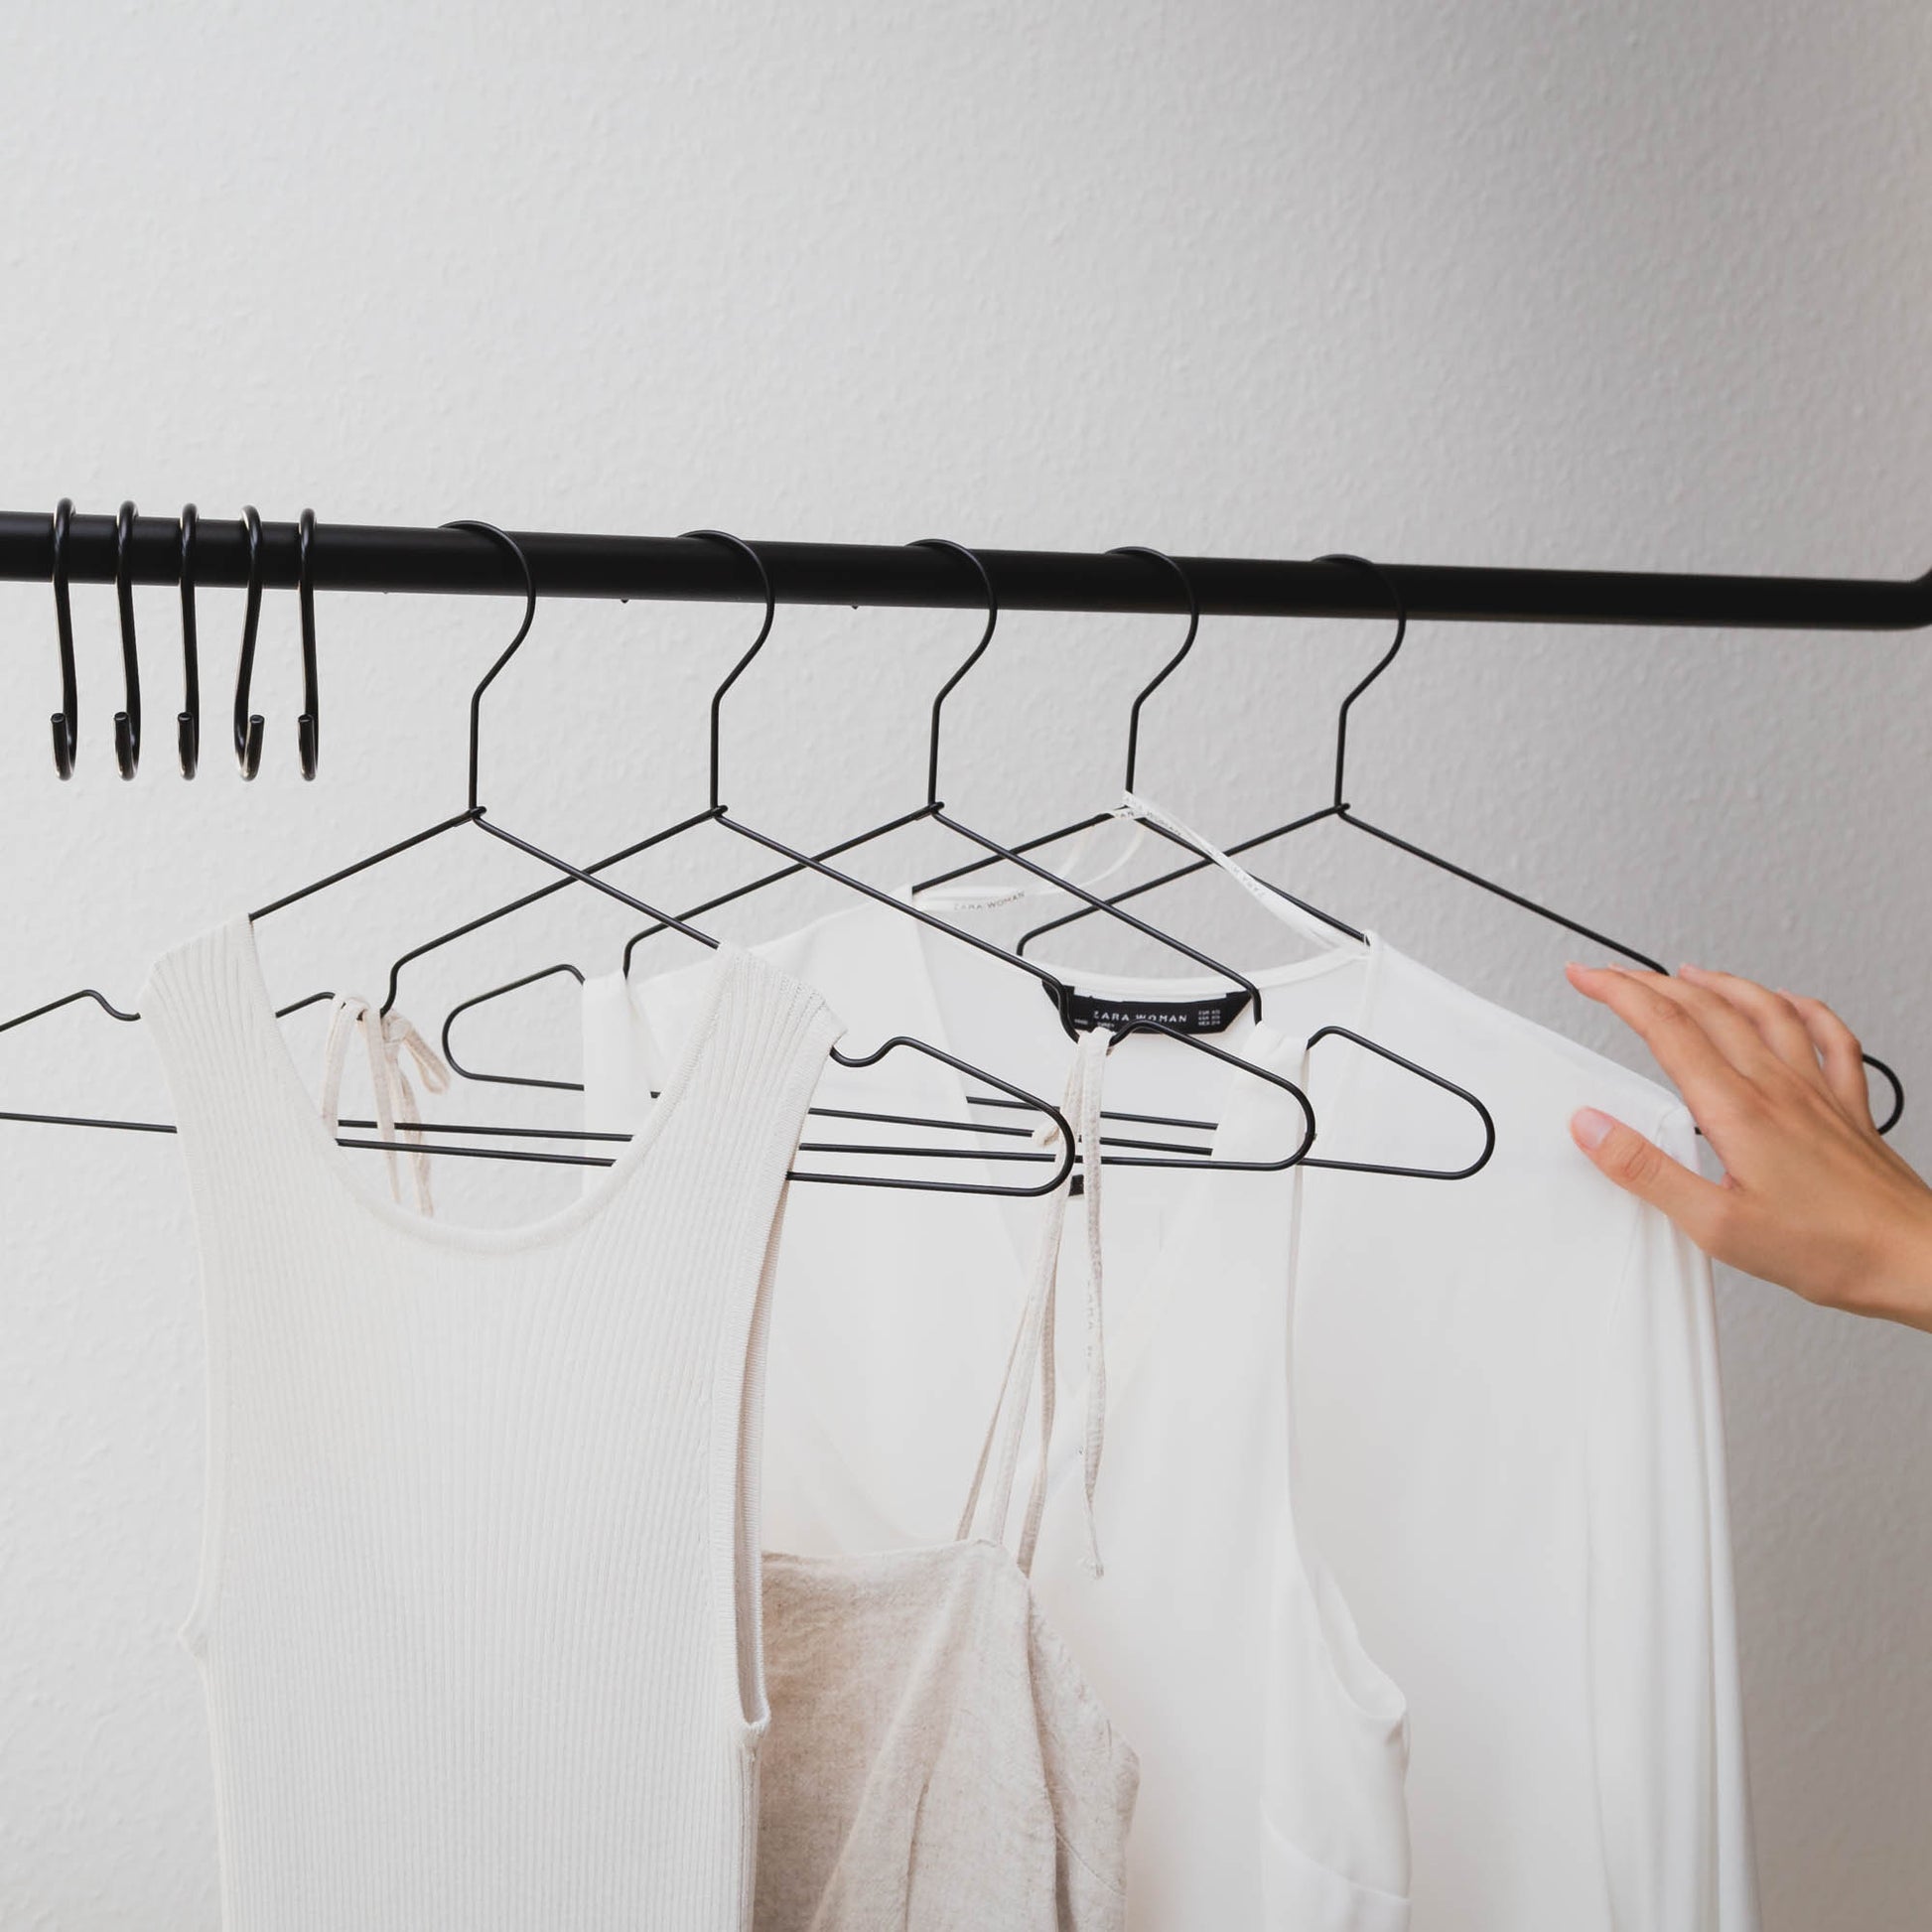 Shirt Hangers - Hangers